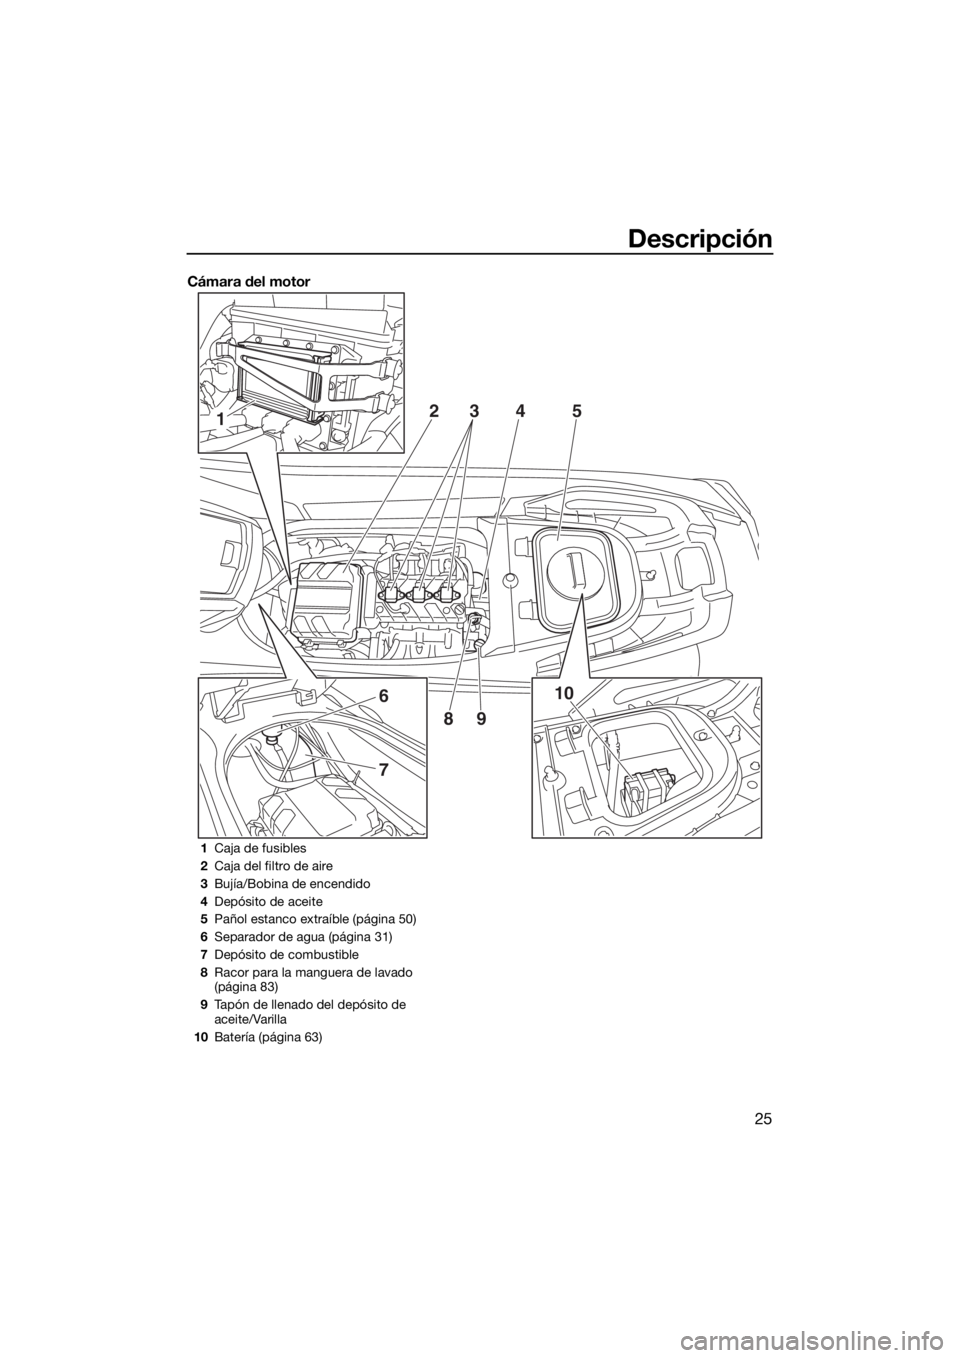 YAMAHA VX LIMITED 2019  Manuale de Empleo (in Spanish) Descripción
25
Cámara del motor
1
6
7
10 2
345
89
1Caja de fusibles
2Caja del filtro de aire
3Bujía/Bobina de encendido
4Depósito de aceite
5Pañol estanco extraíble (página 50)
6Separador de ag